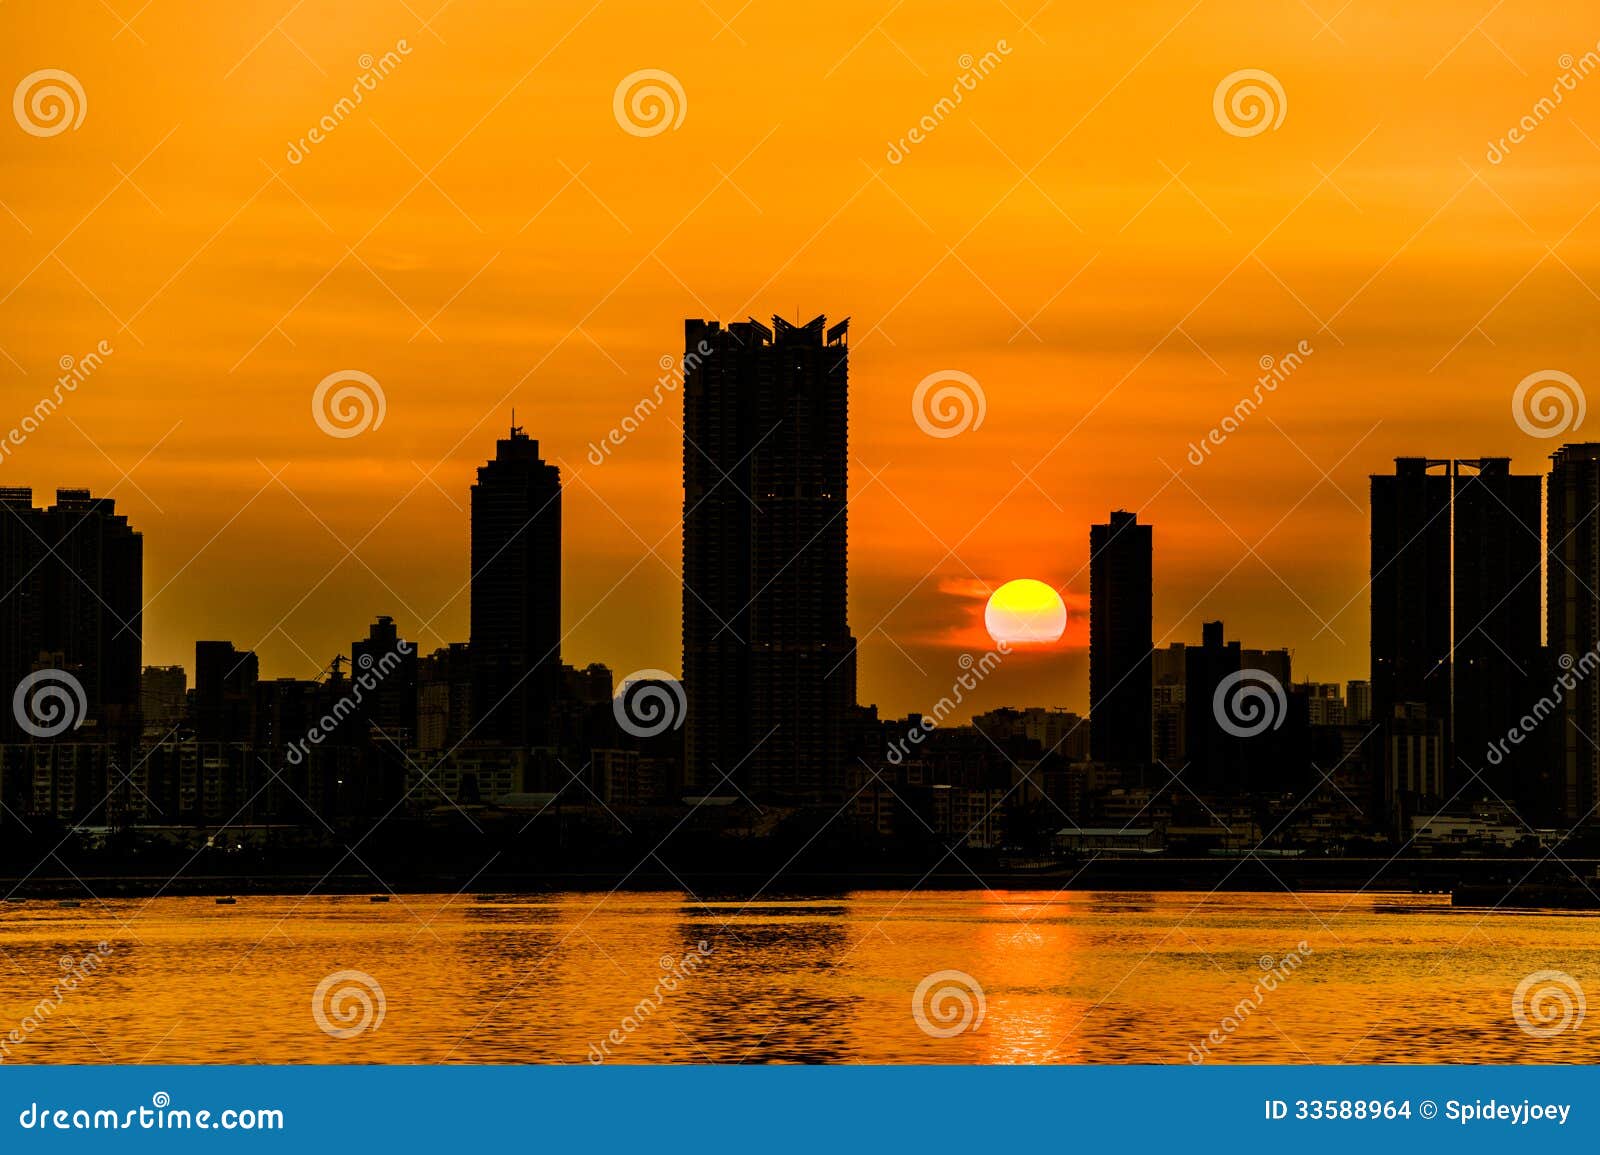 sunset kwun tong